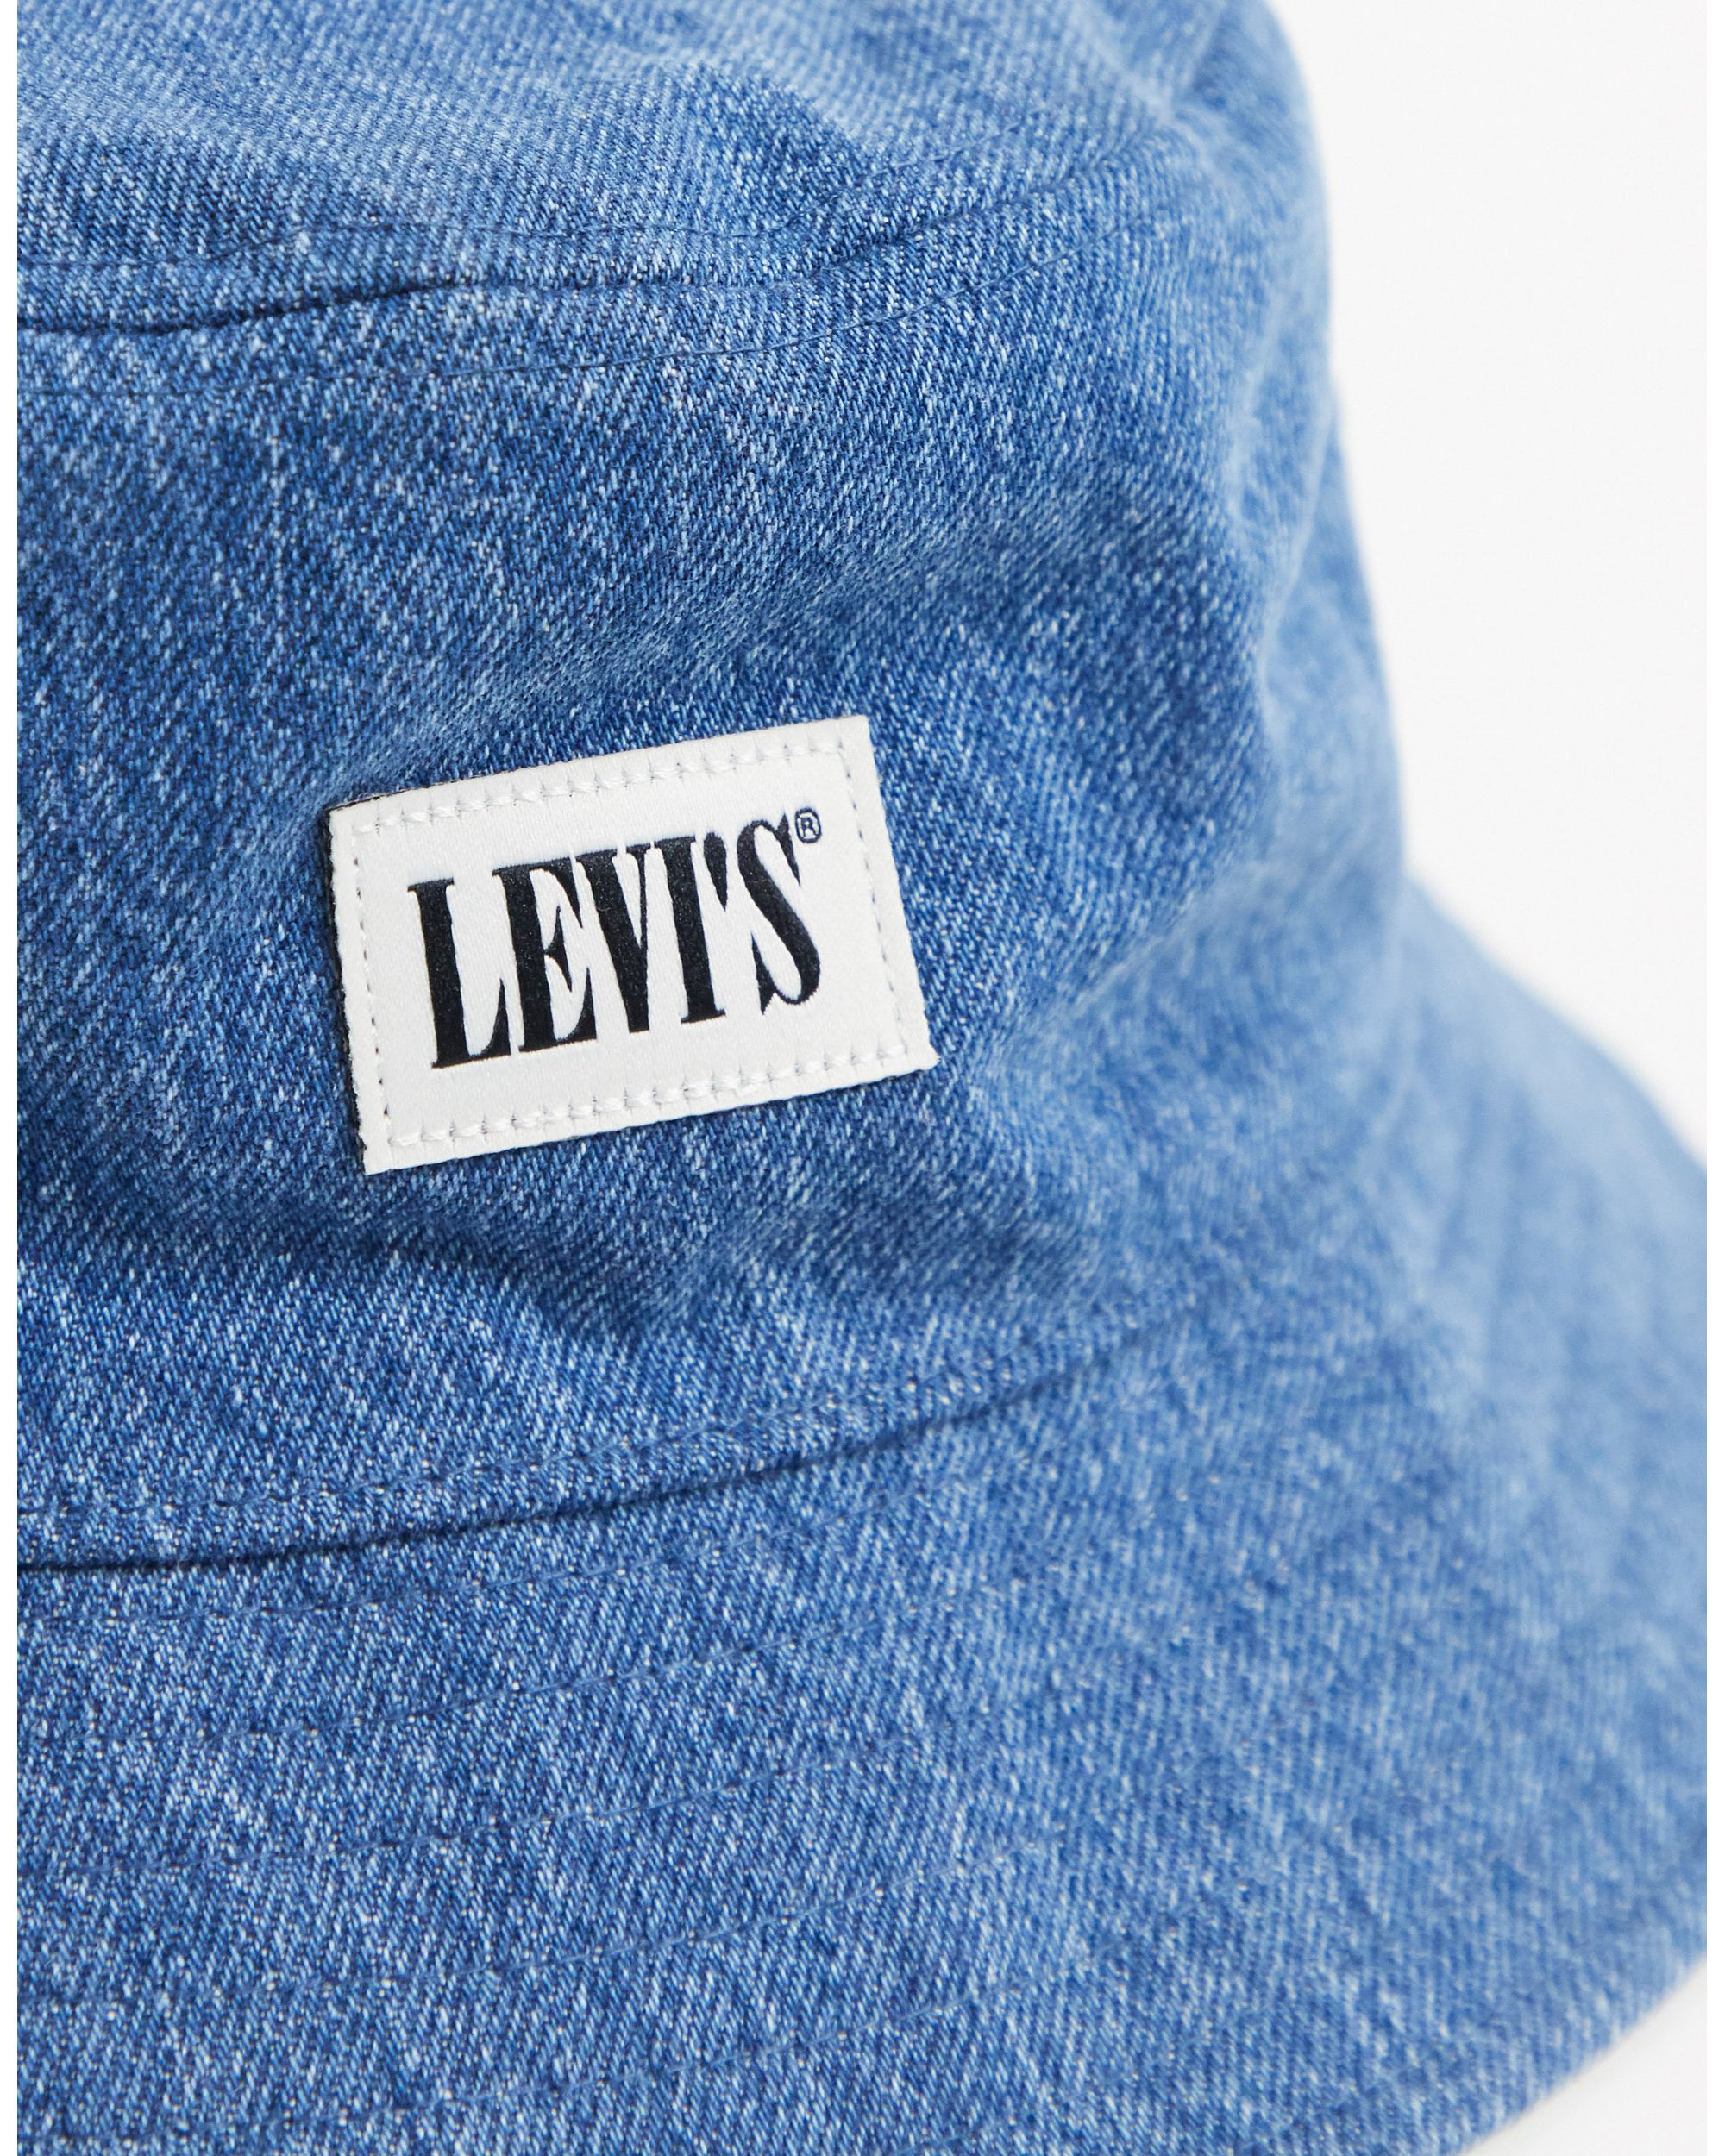 Levi's Bucket Hat